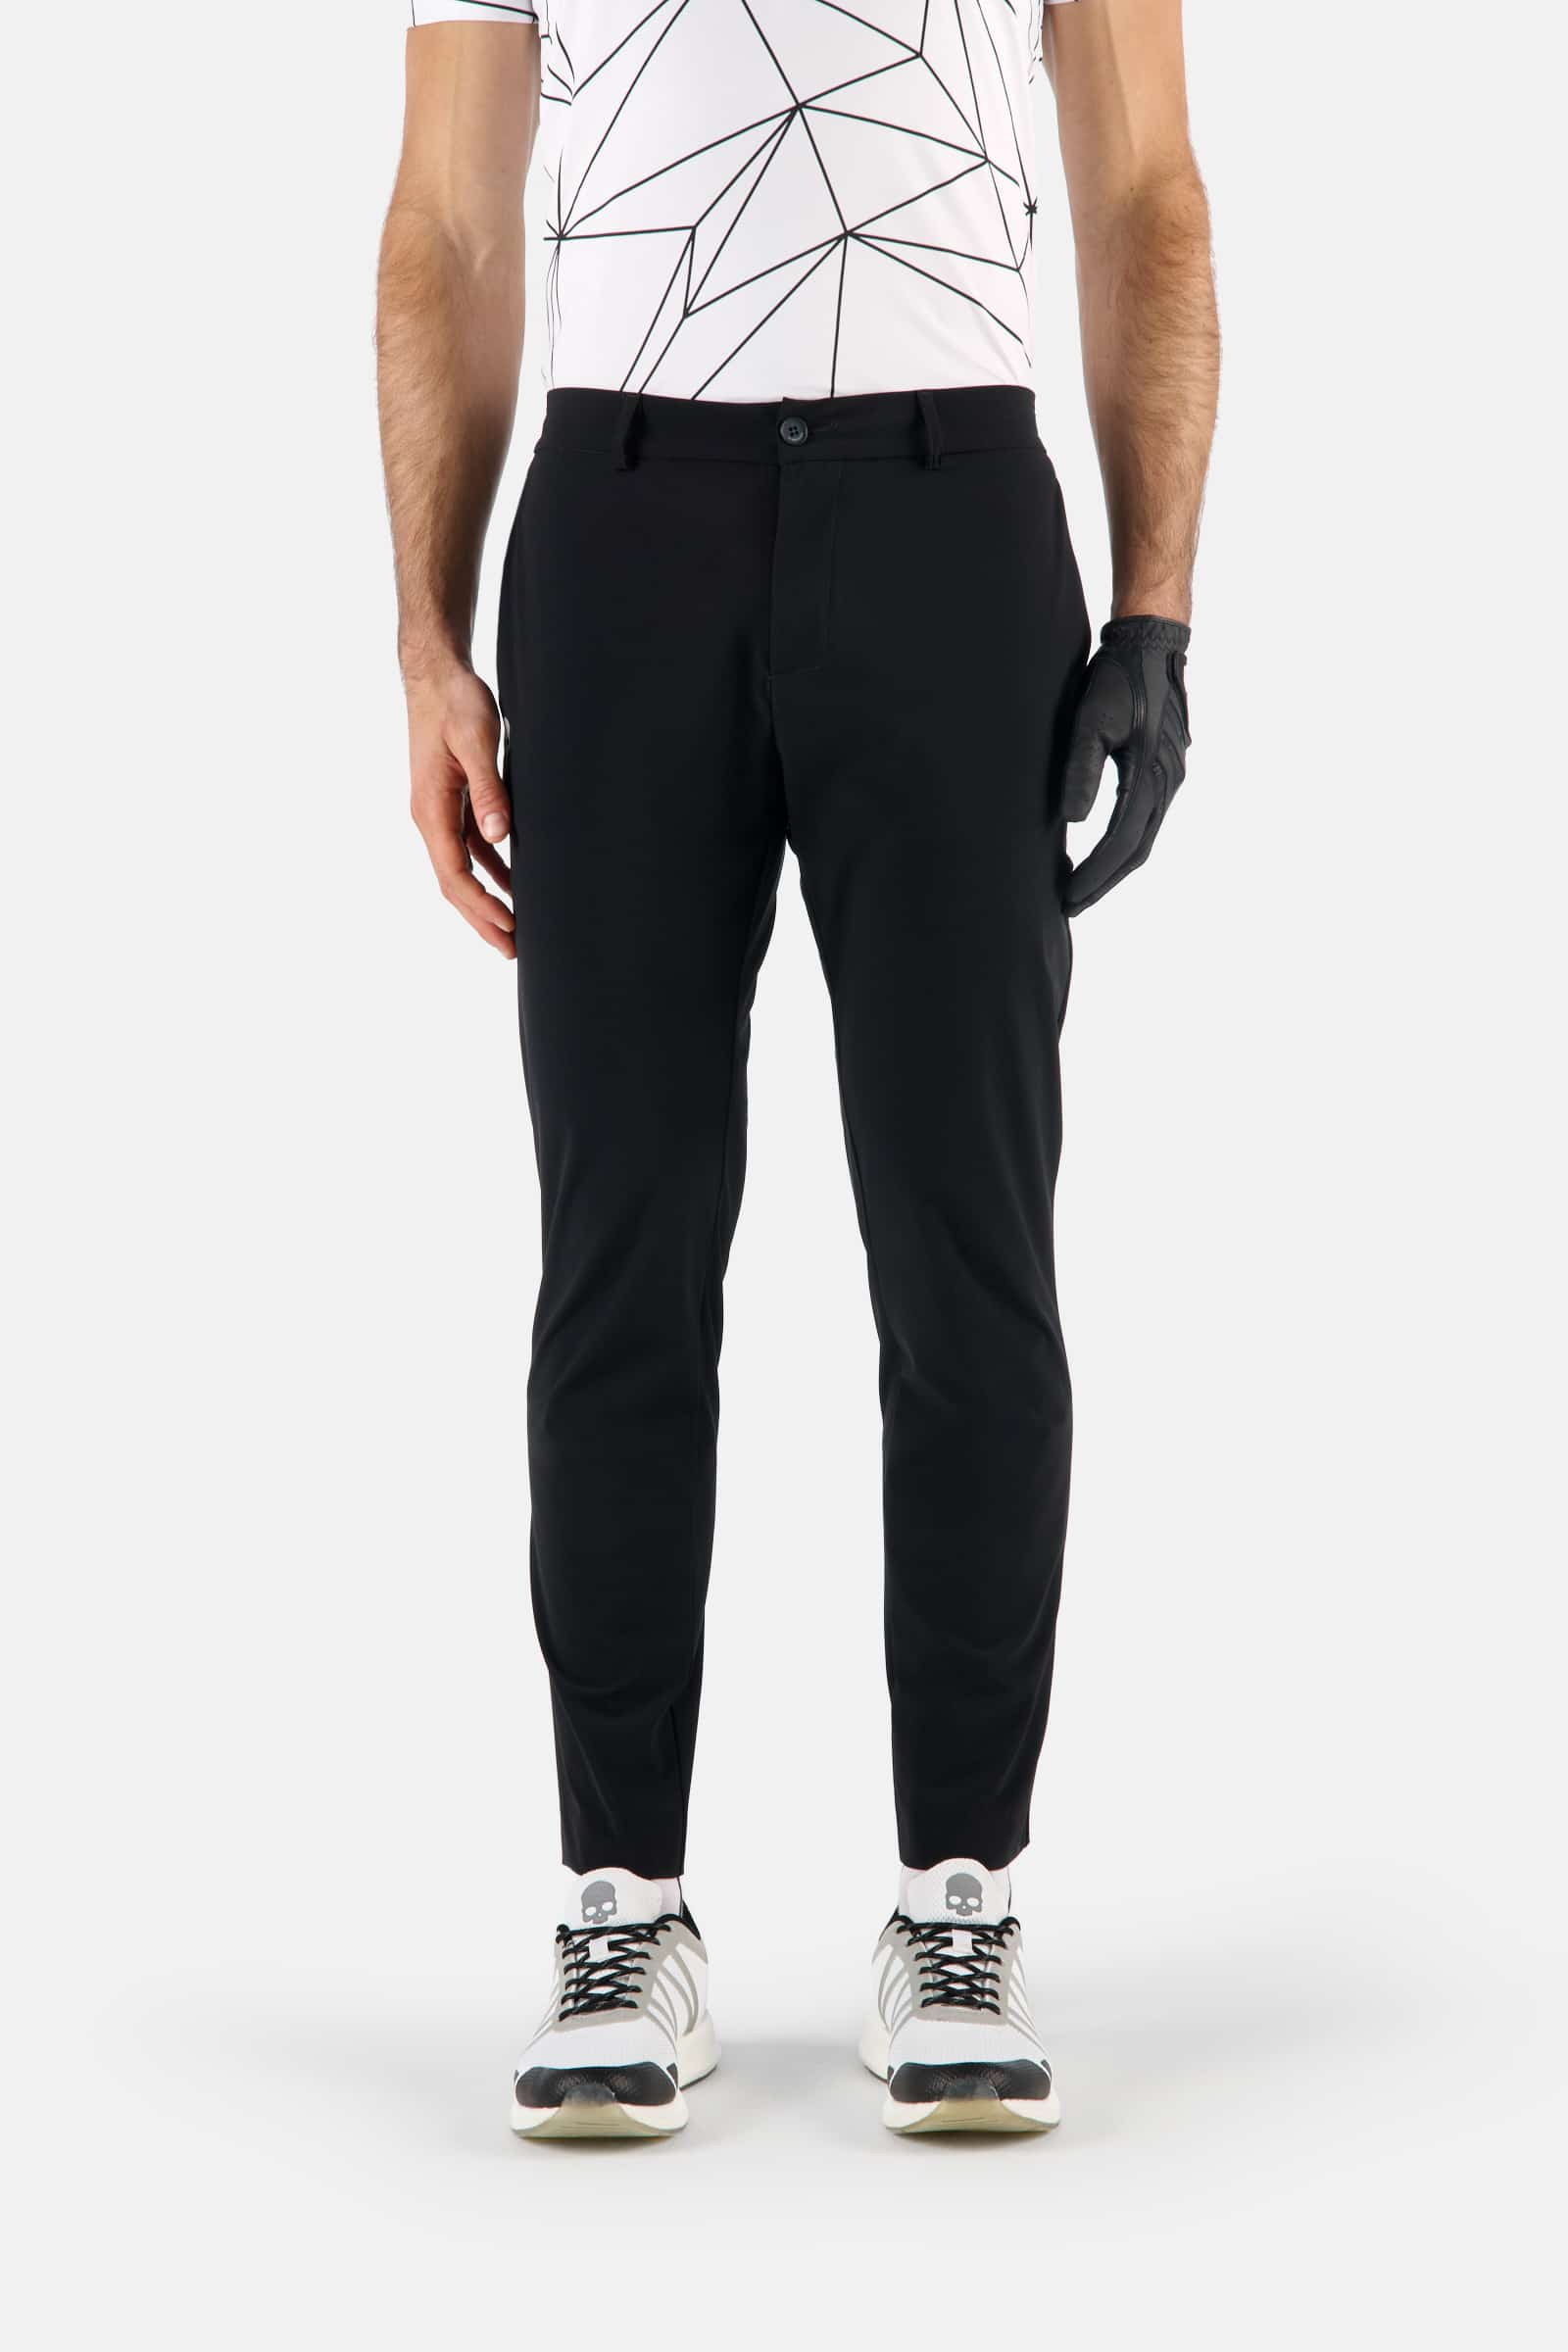 GOLF PANTS - Apparel - Hydrogen - Luxury Sportwear